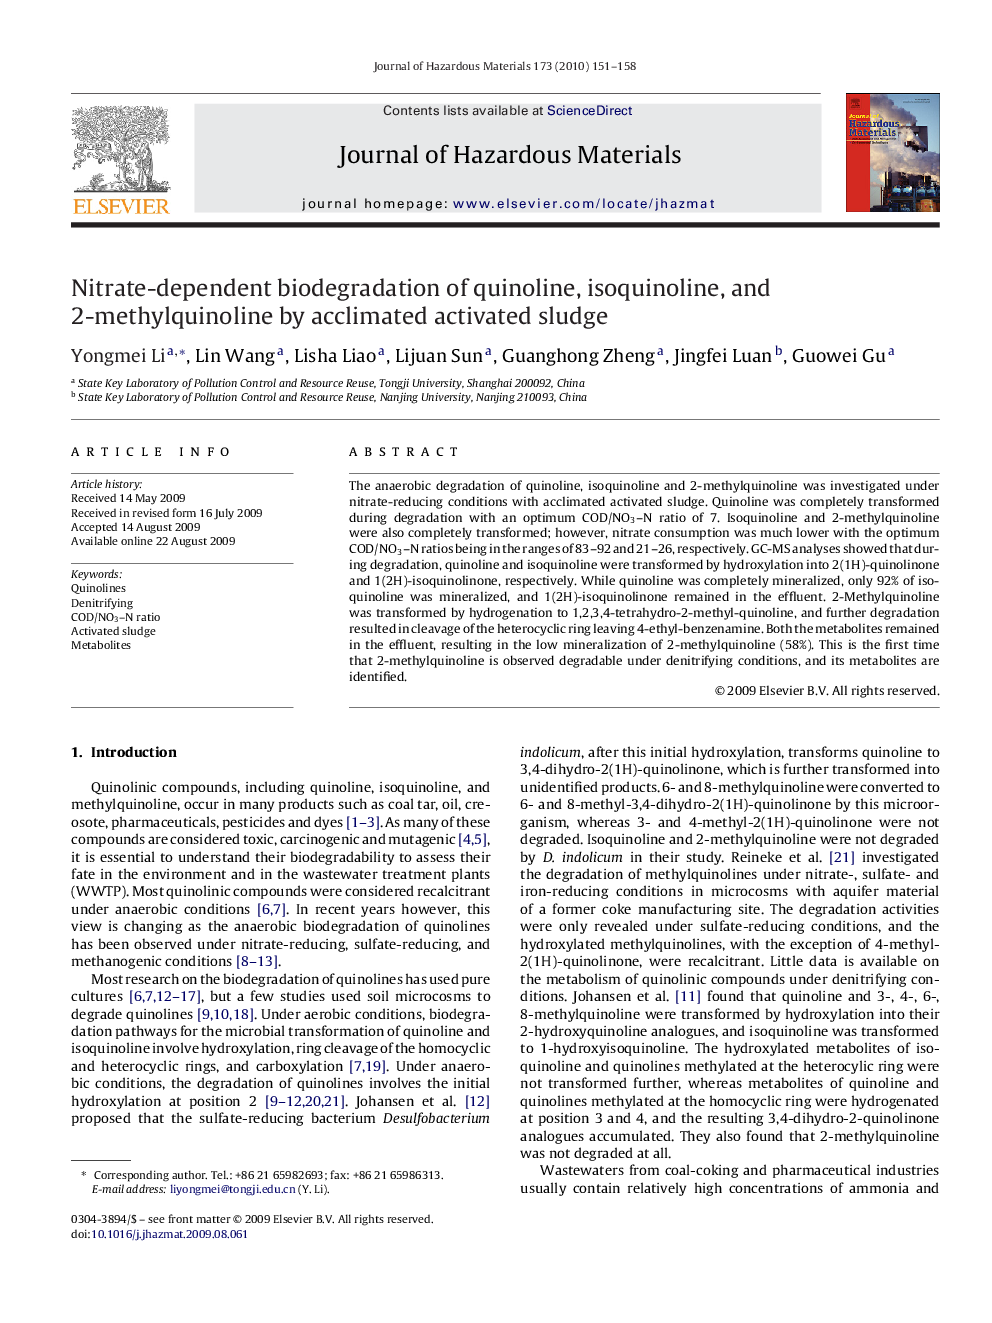 Nitrate-dependent biodegradation of quinoline, isoquinoline, and 2-methylquinoline by acclimated activated sludge